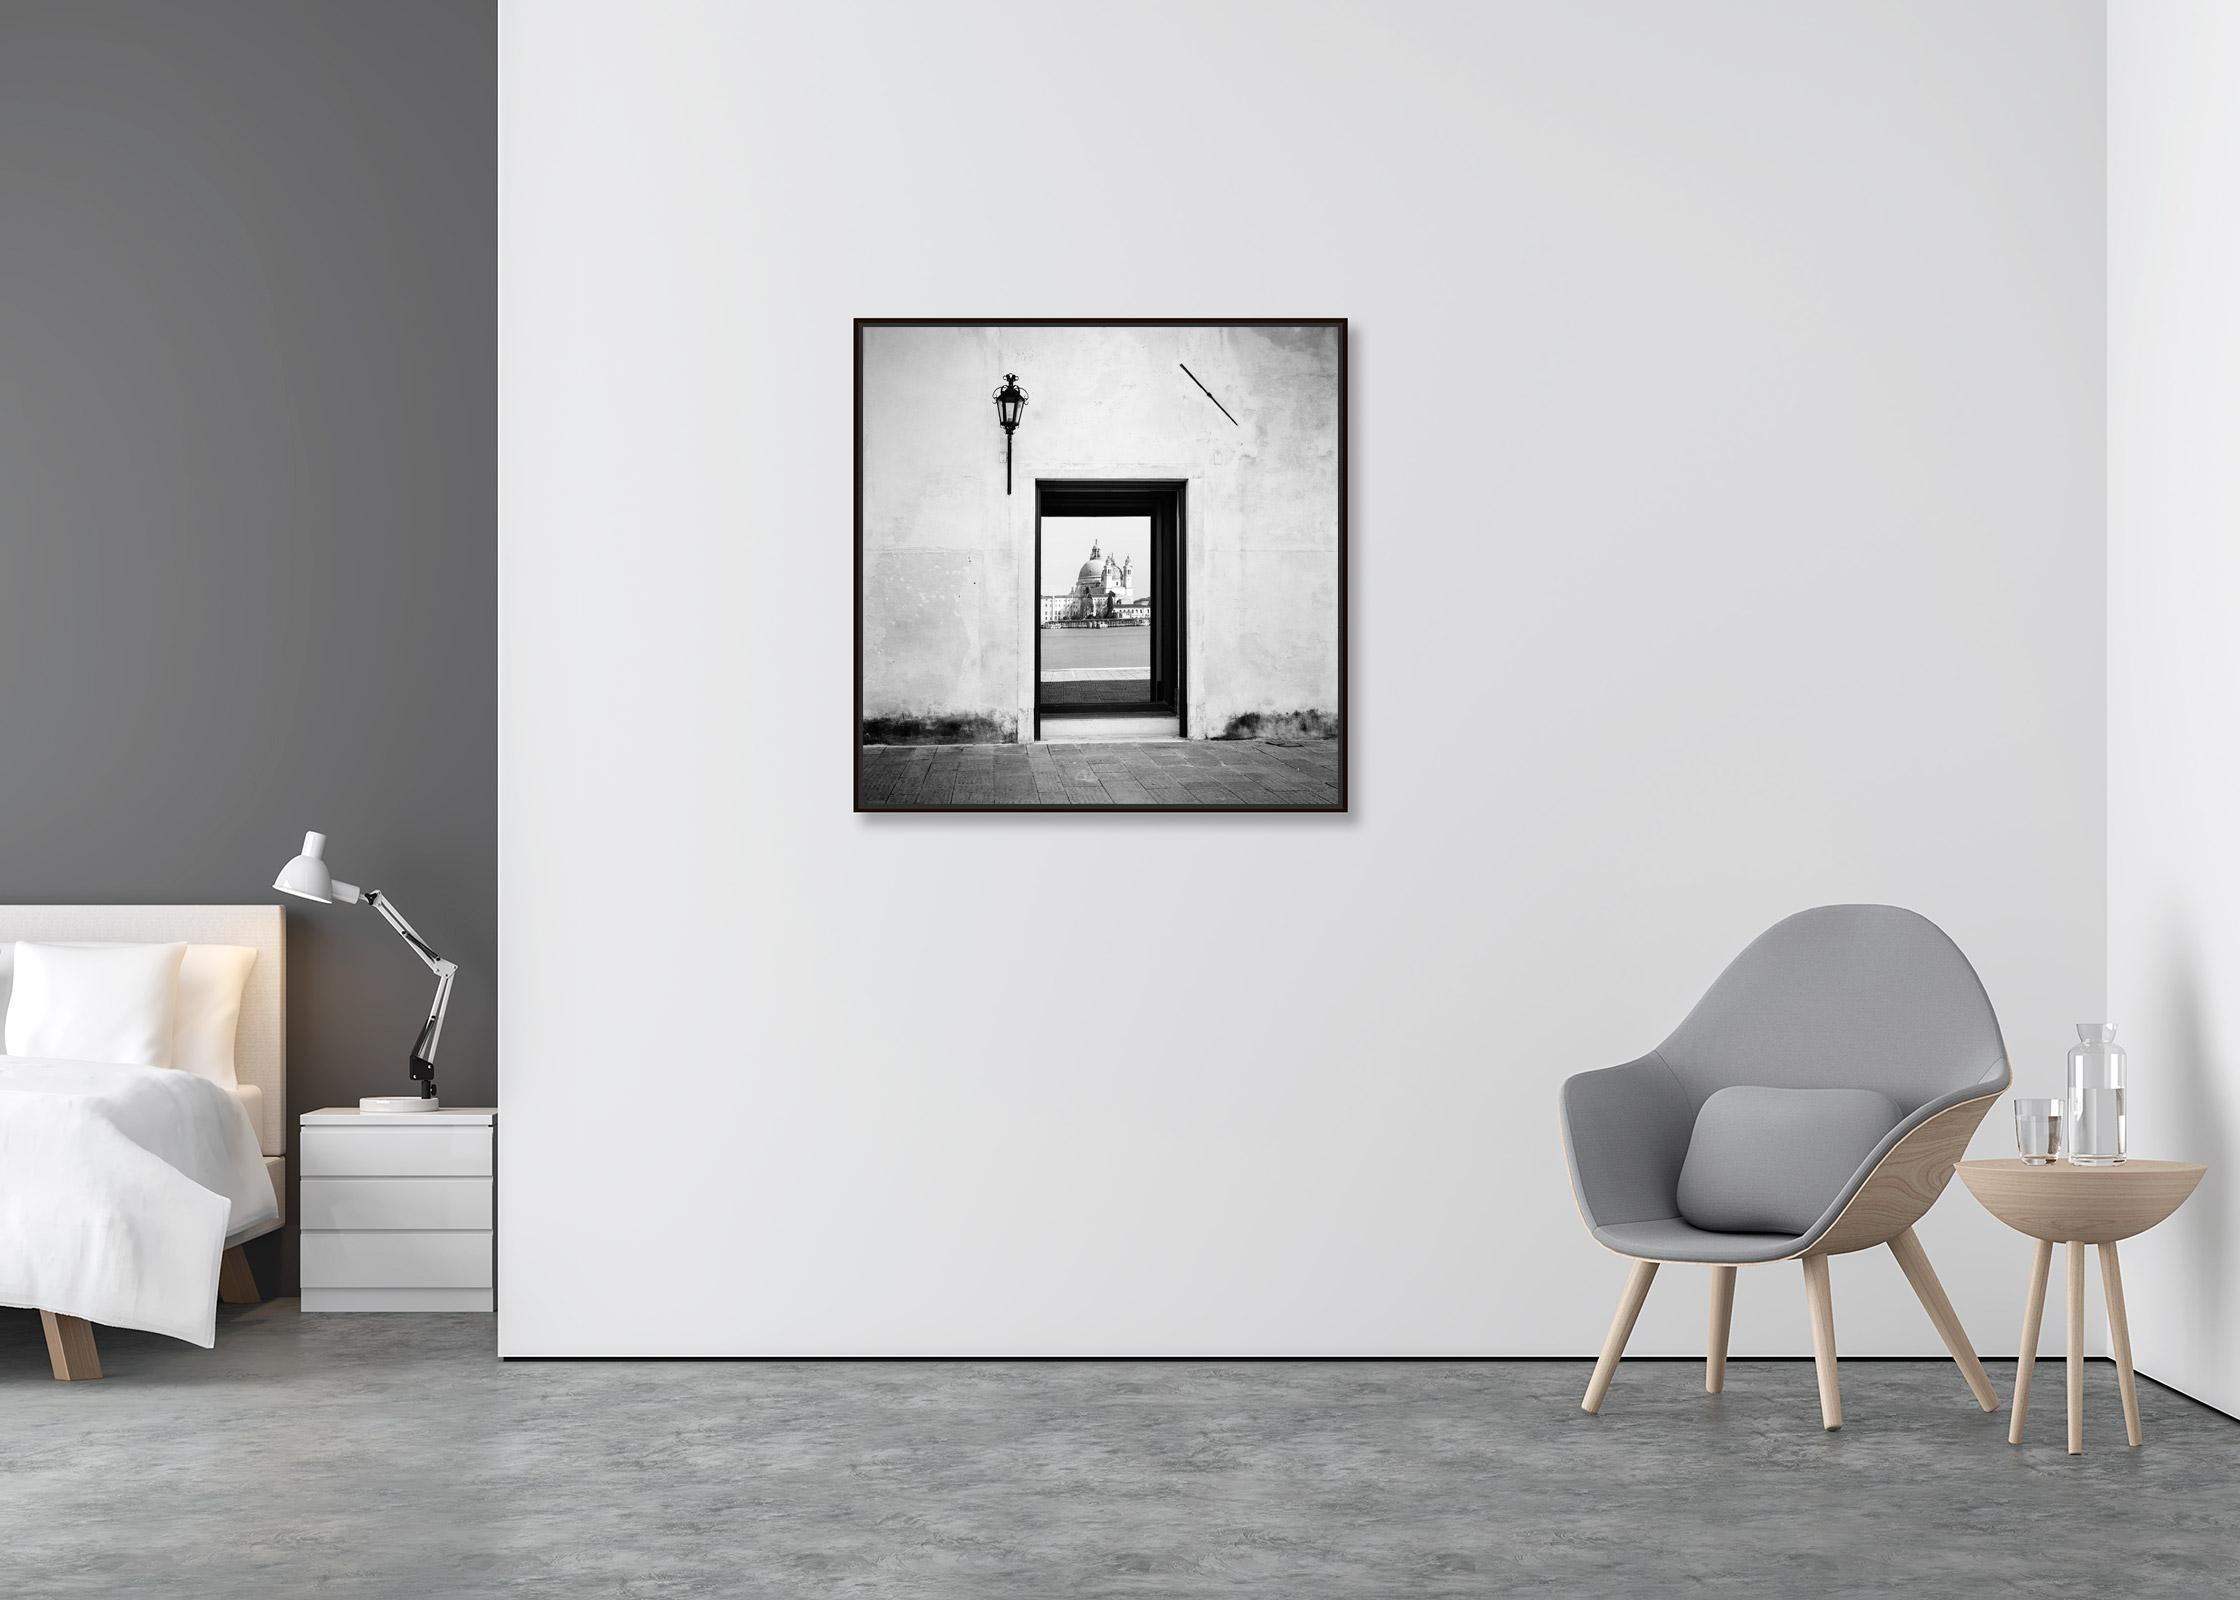 Reflection, Venedig, Italien, Schwarz-Weiß-Fotografiedruck der bildenden Kunst (Minimalistisch), Photograph, von Gerald Berghammer